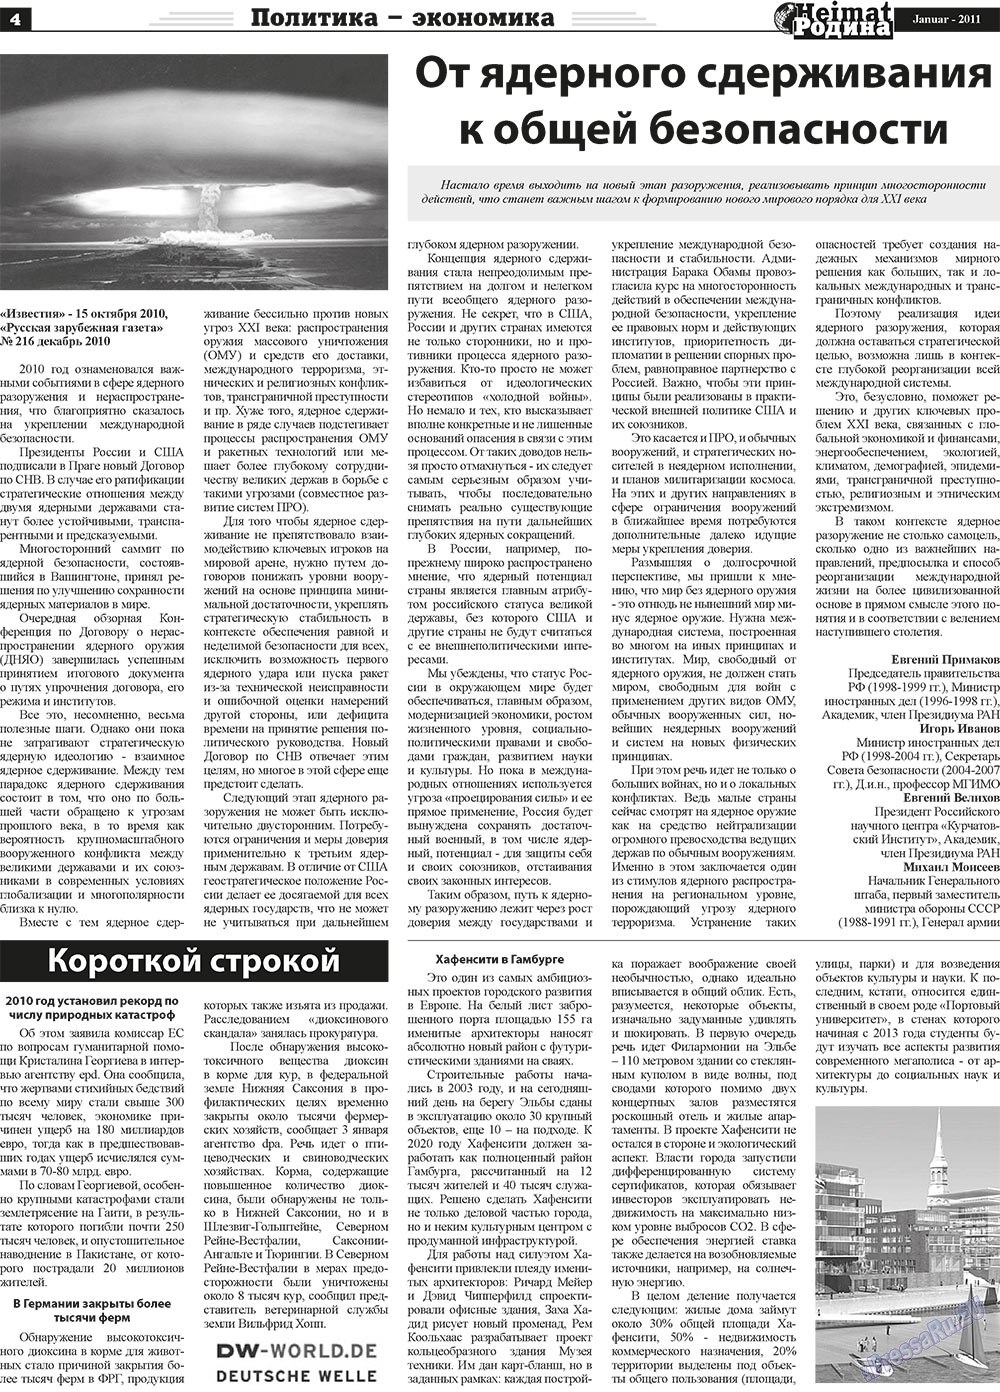 Heimat-Родина (газета). 2011 год, номер 1, стр. 4